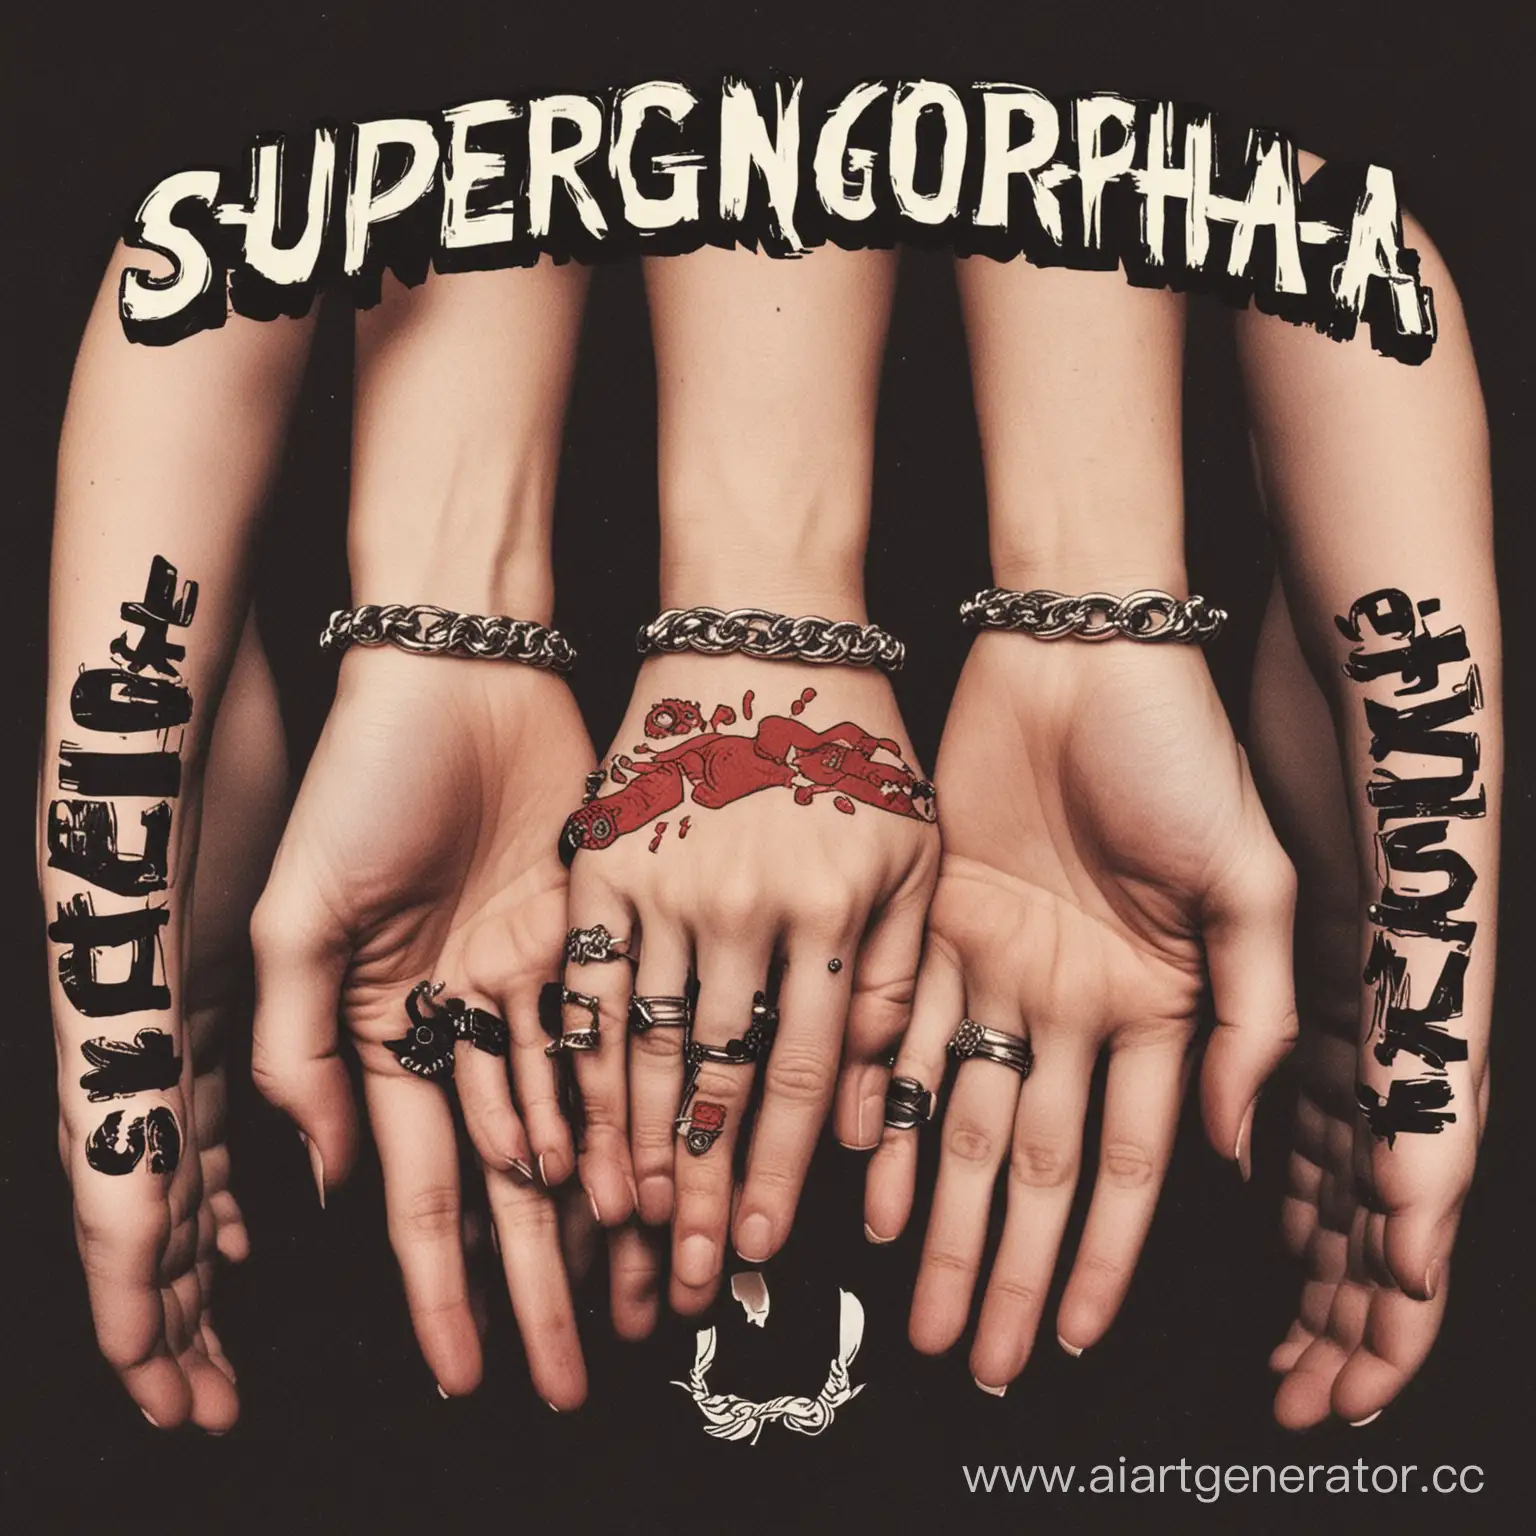 Обложка для панк-группы под названием "Supergonorrhea", где четыре человека держаться за руки